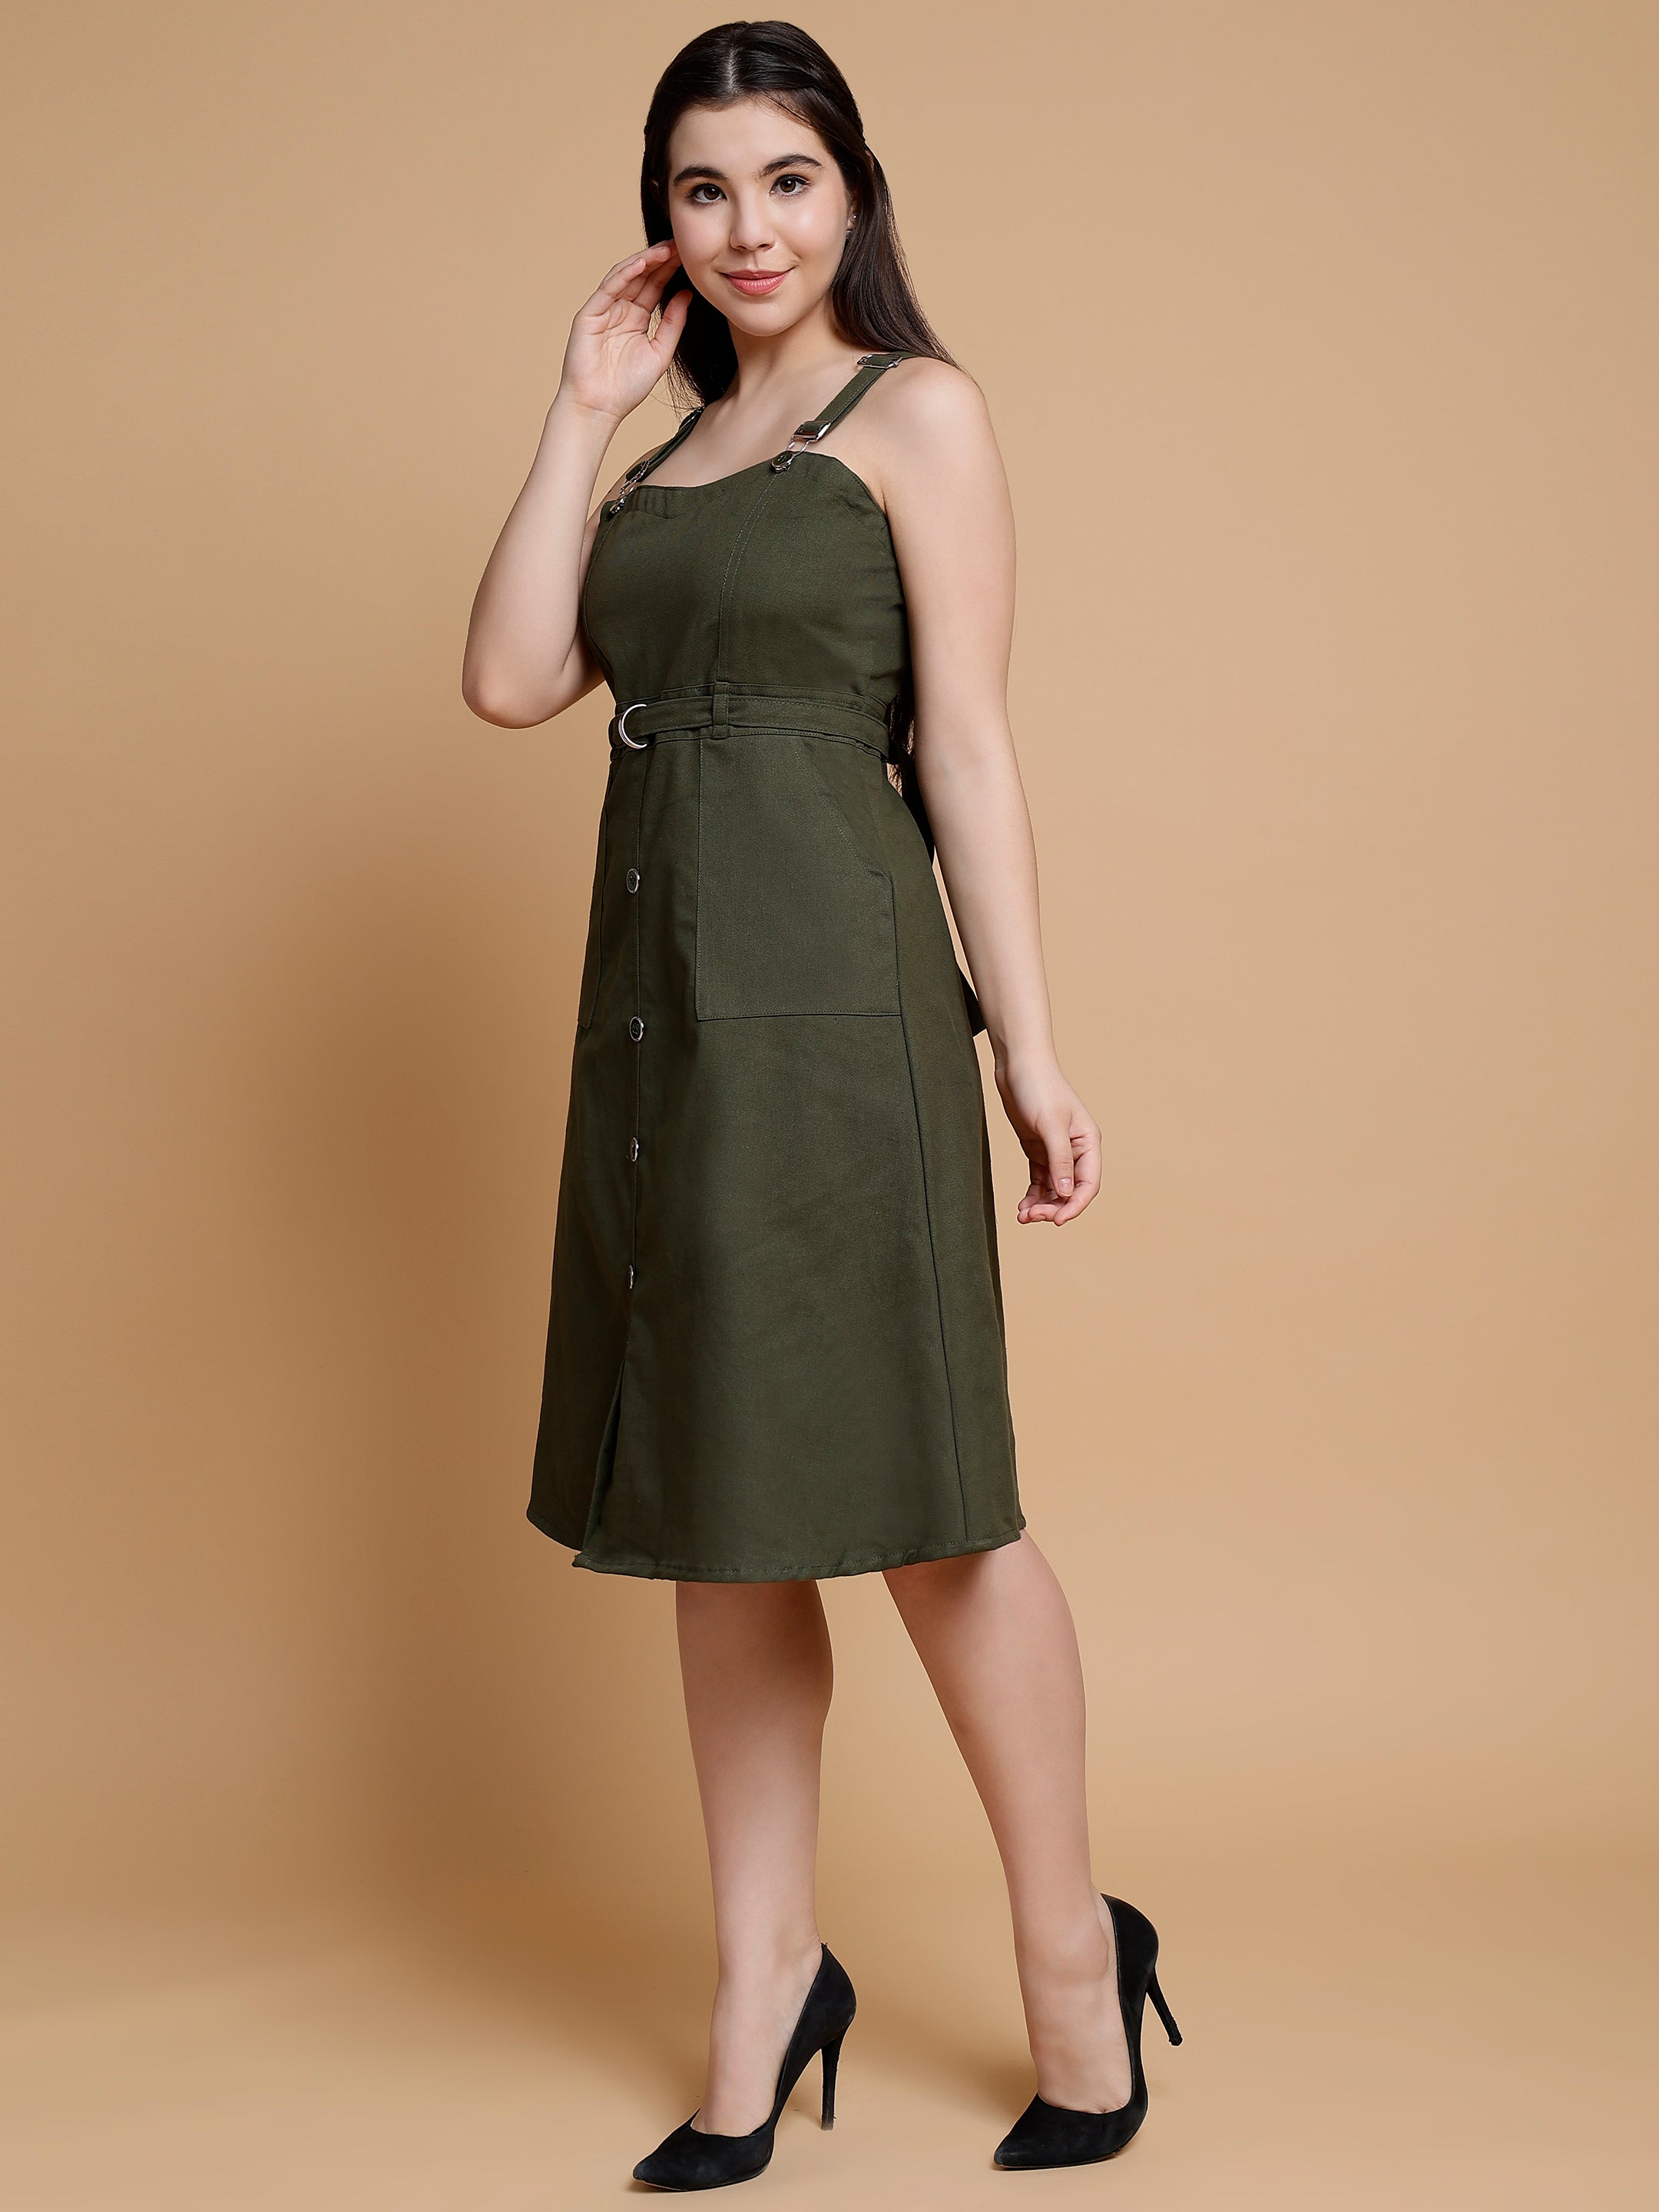 Glamoda A Green Cotton Dress